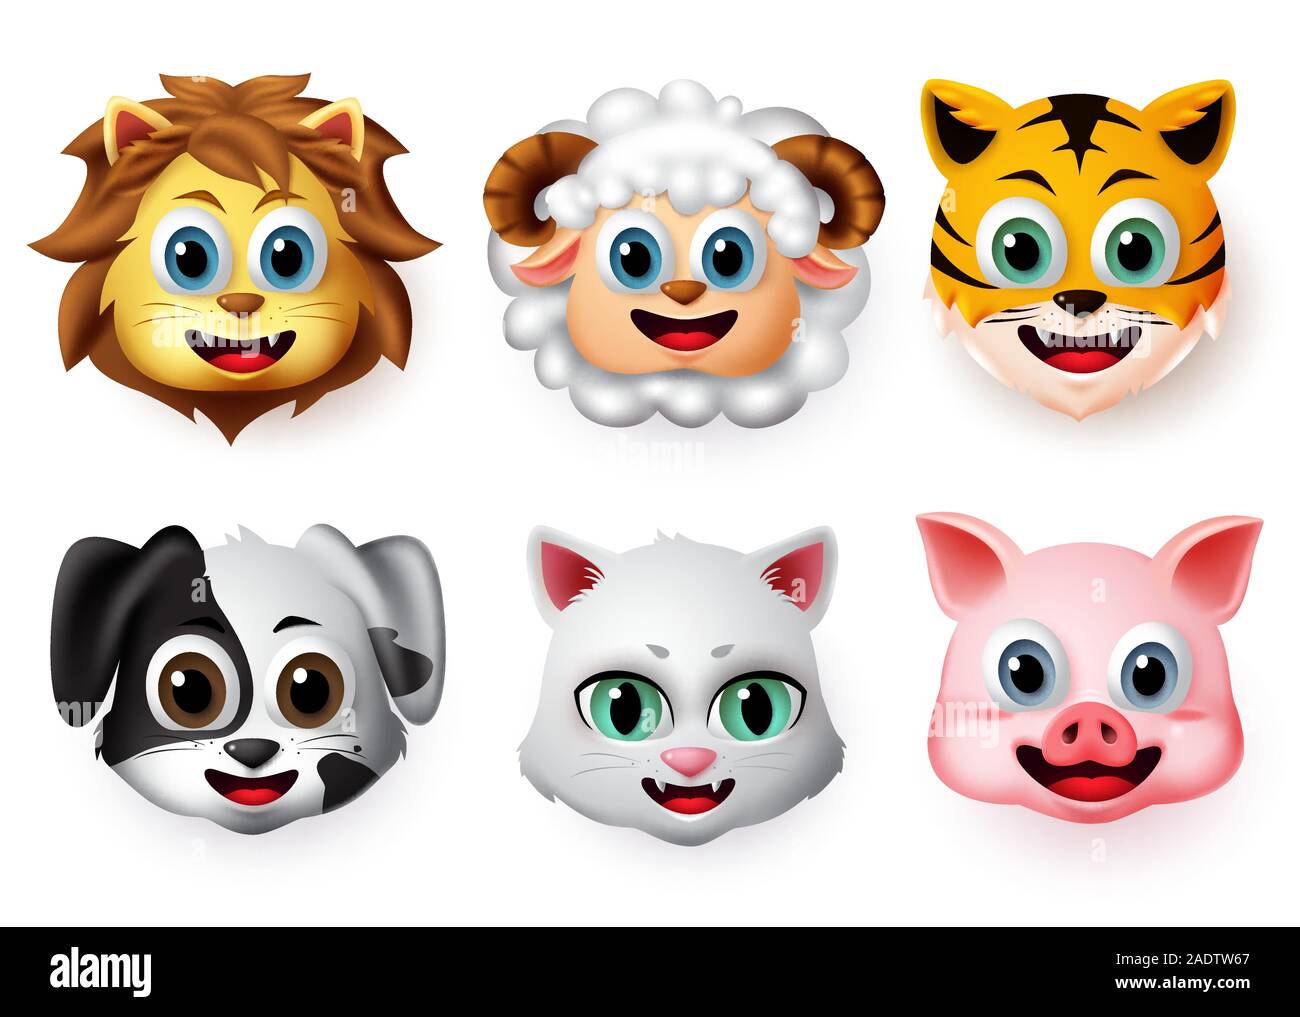 Emojis und Emoticons Tiere Happy Face Vector eingestellt. Tier emoji Gesicht von Lion, Lamm, Tiger, Hund, Katze, Schwein Charakter Kreatur im Lächeln ausdrücken. Stock Vektor